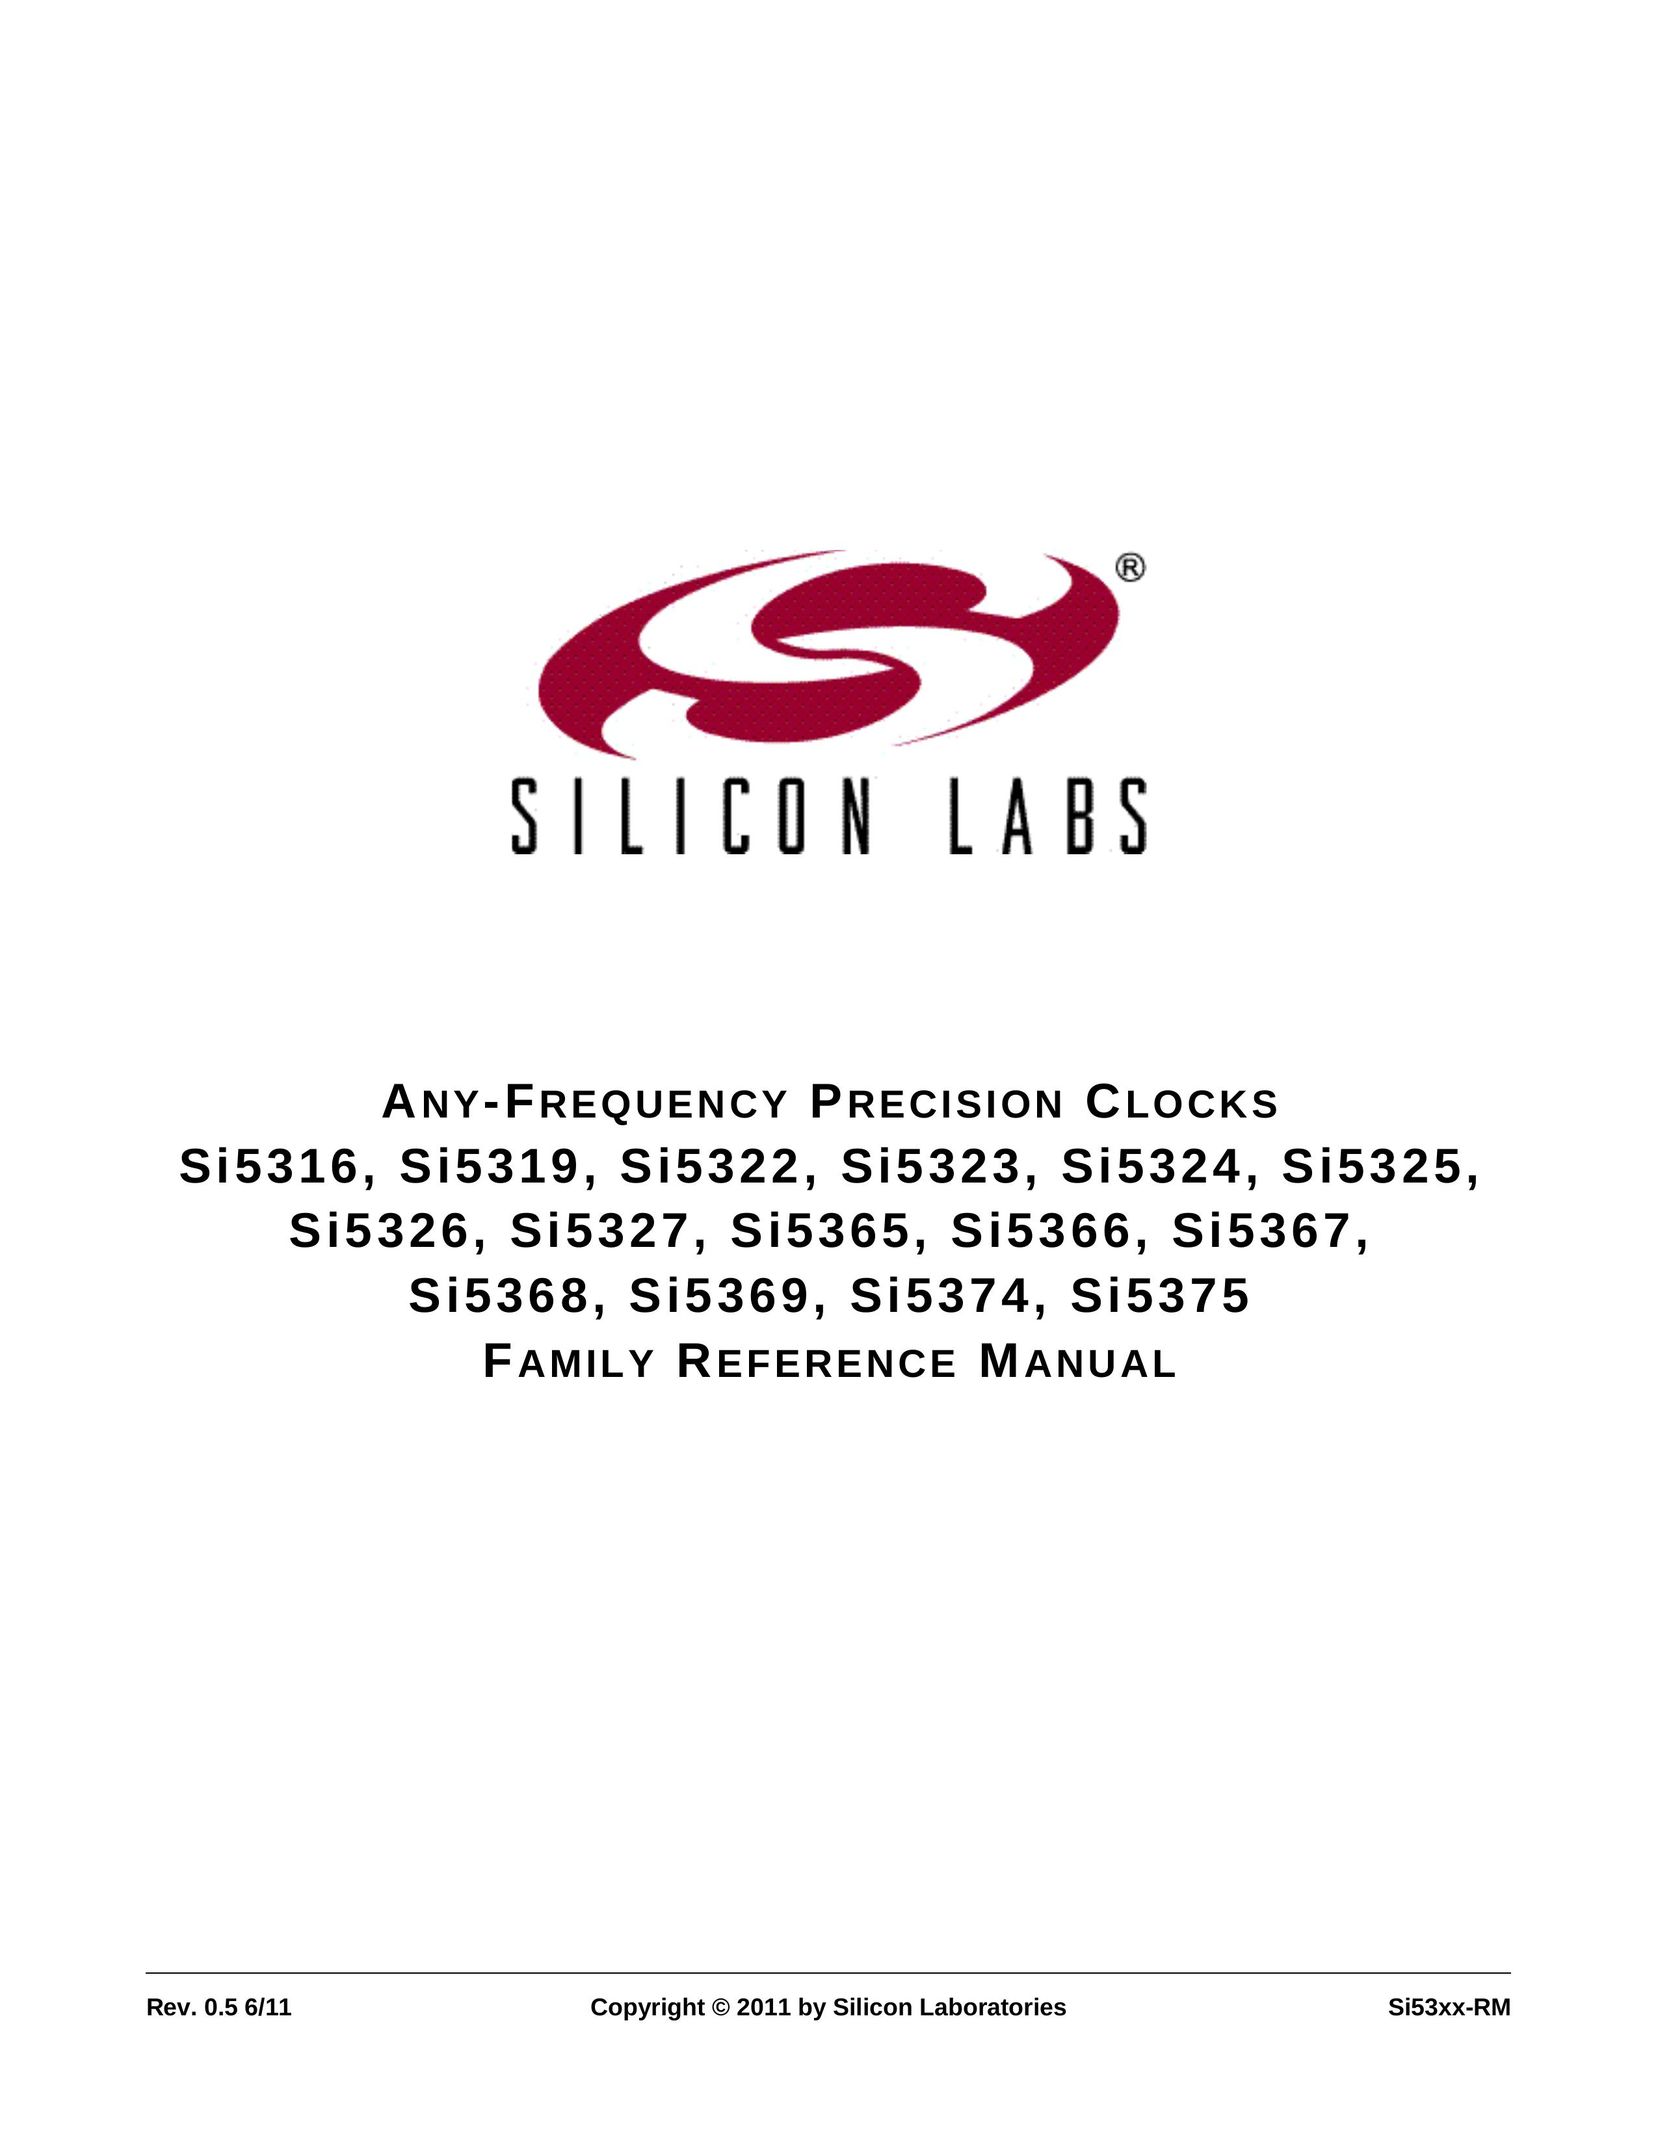 Silicon Laboratories SI5368 Clock User Manual